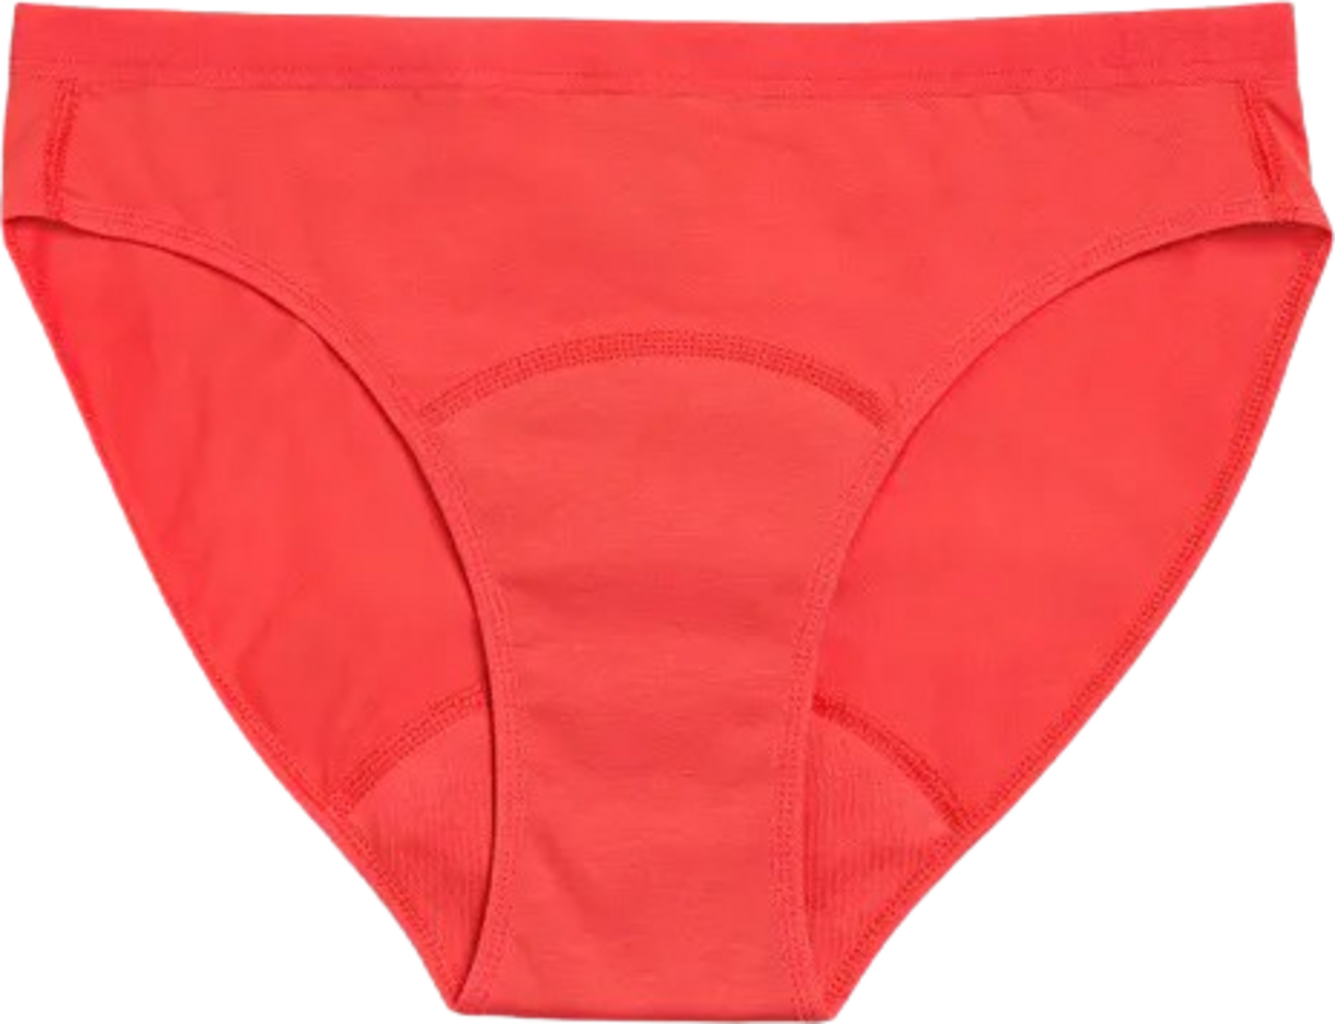 Cotton Period Underwear - Red- Moderate